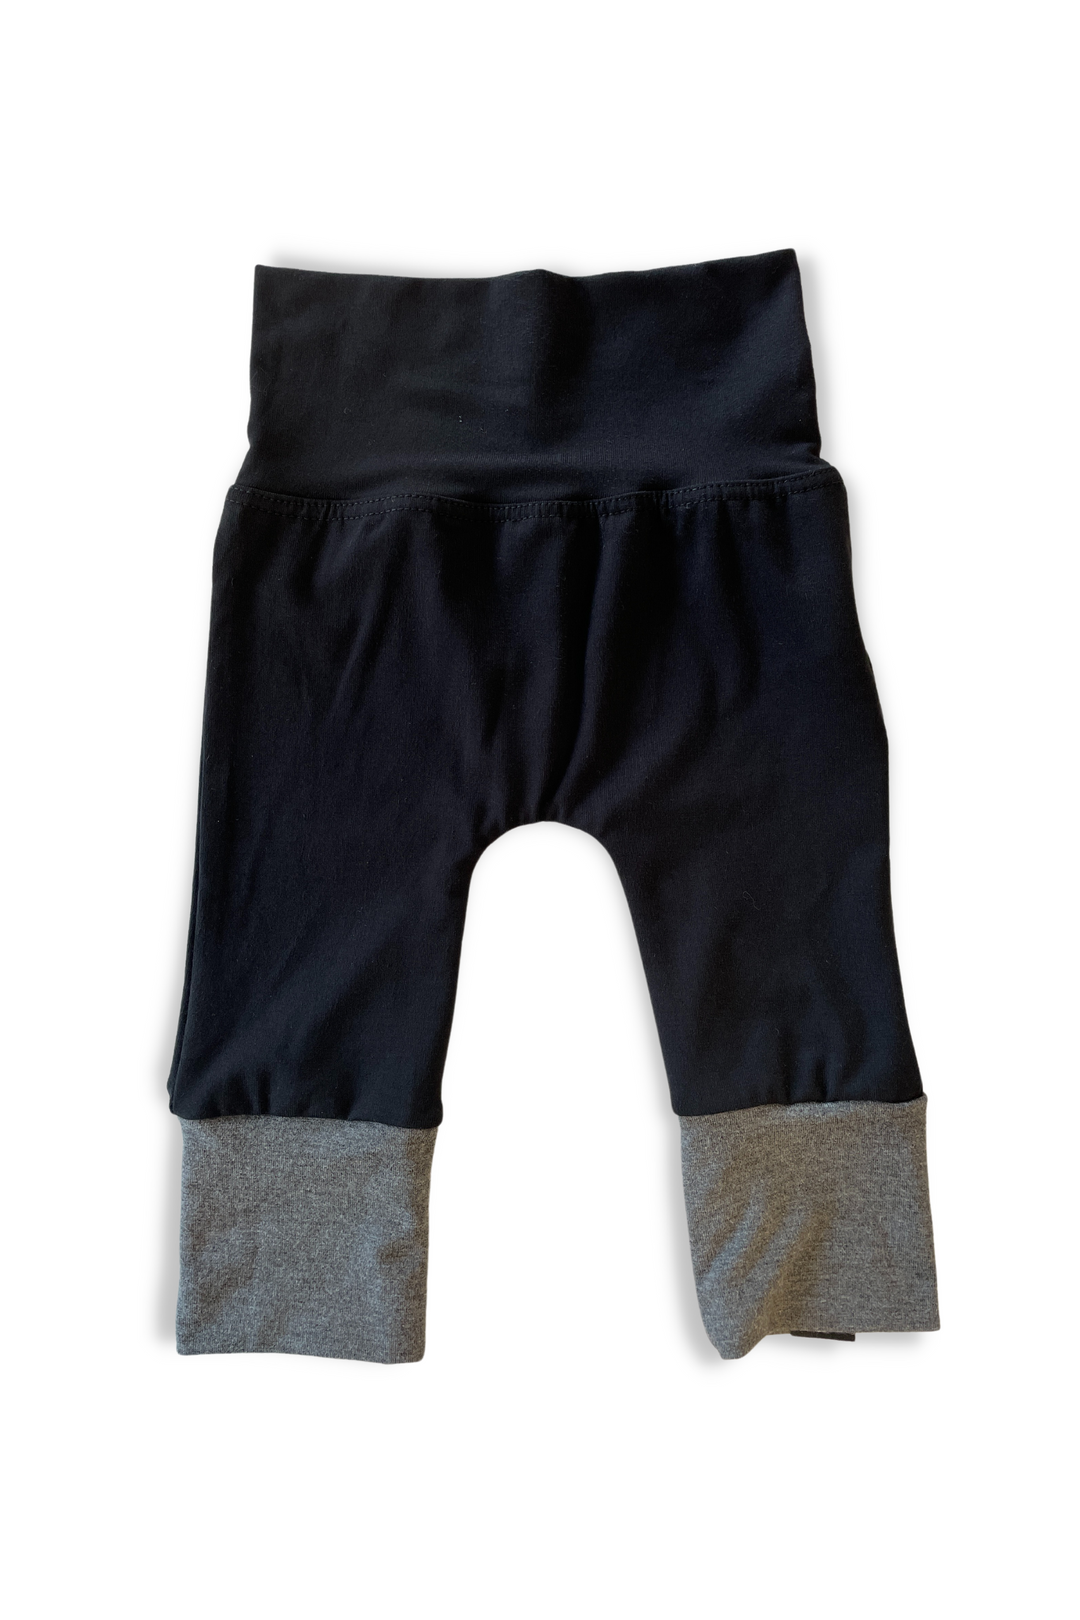 Pantalon pour bébé évolutif en bambou gris et noir